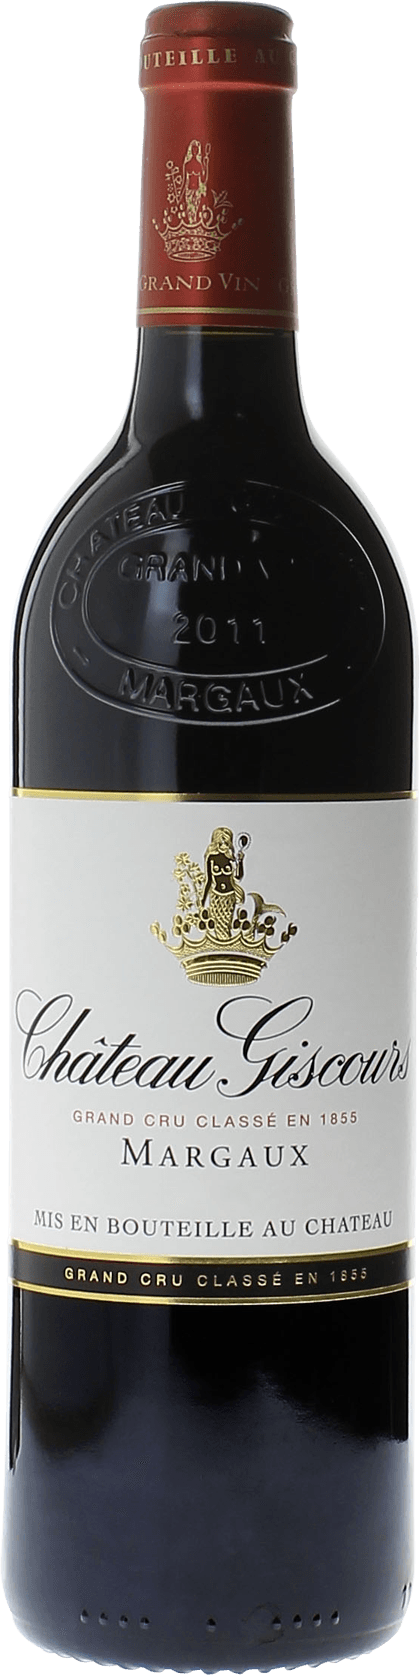 Giscours 2020 3me Grand cru class Margaux, Bordeaux rouge